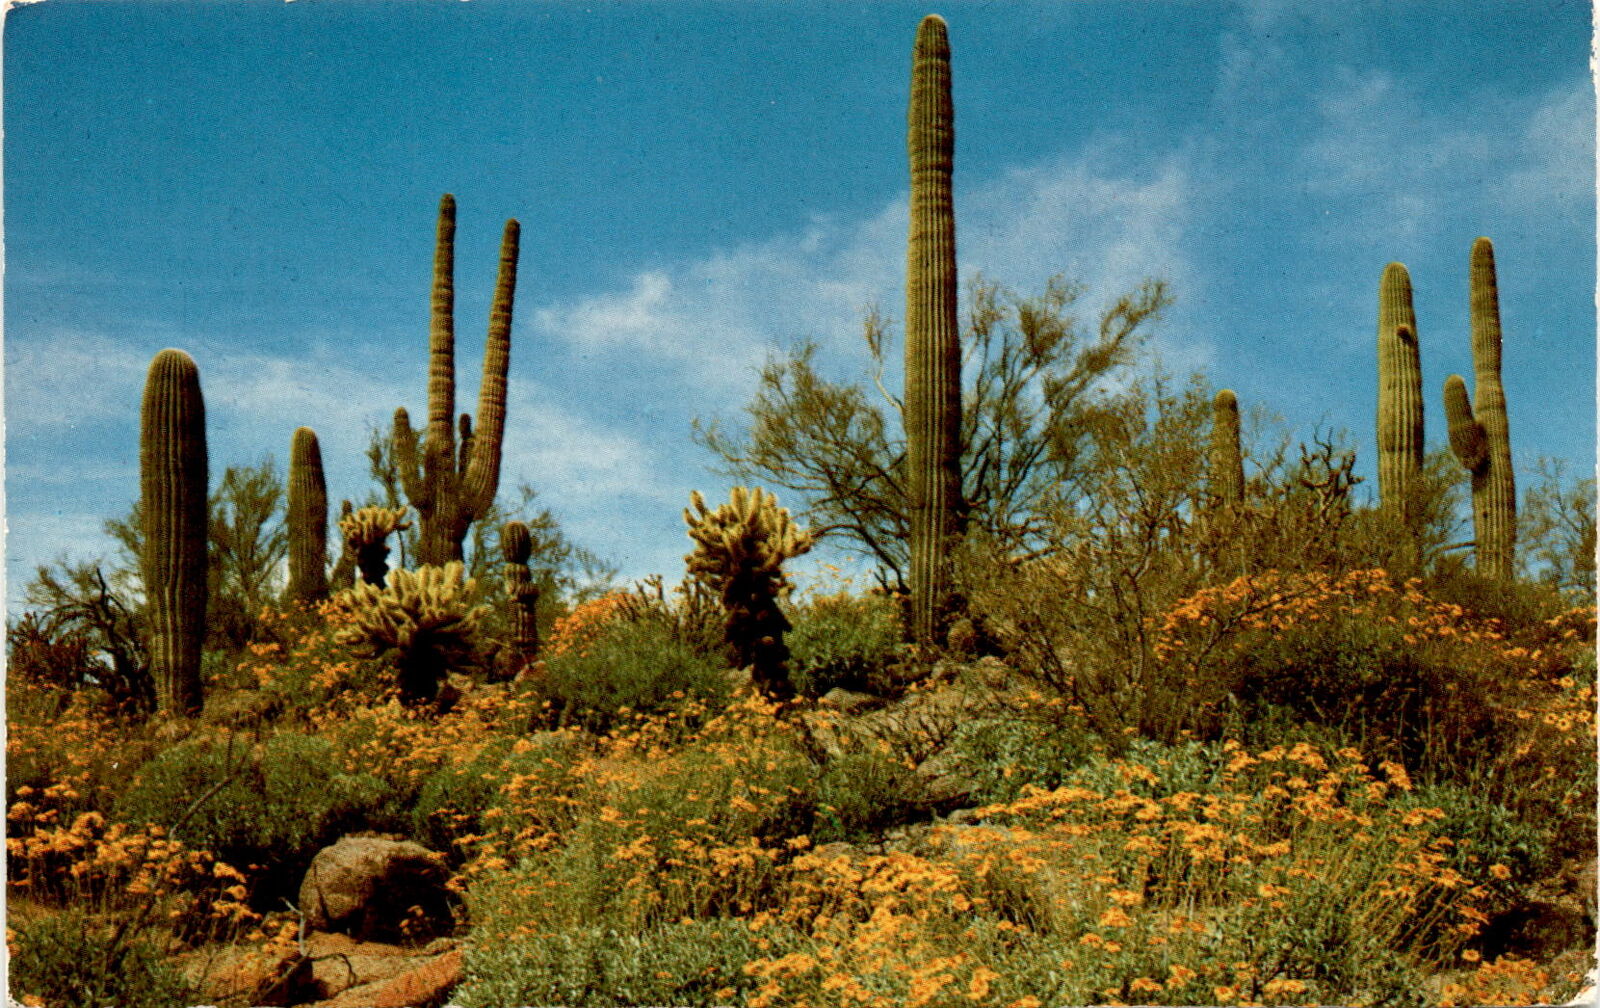 Spring in desert: blooming wildflowers vintage postcard